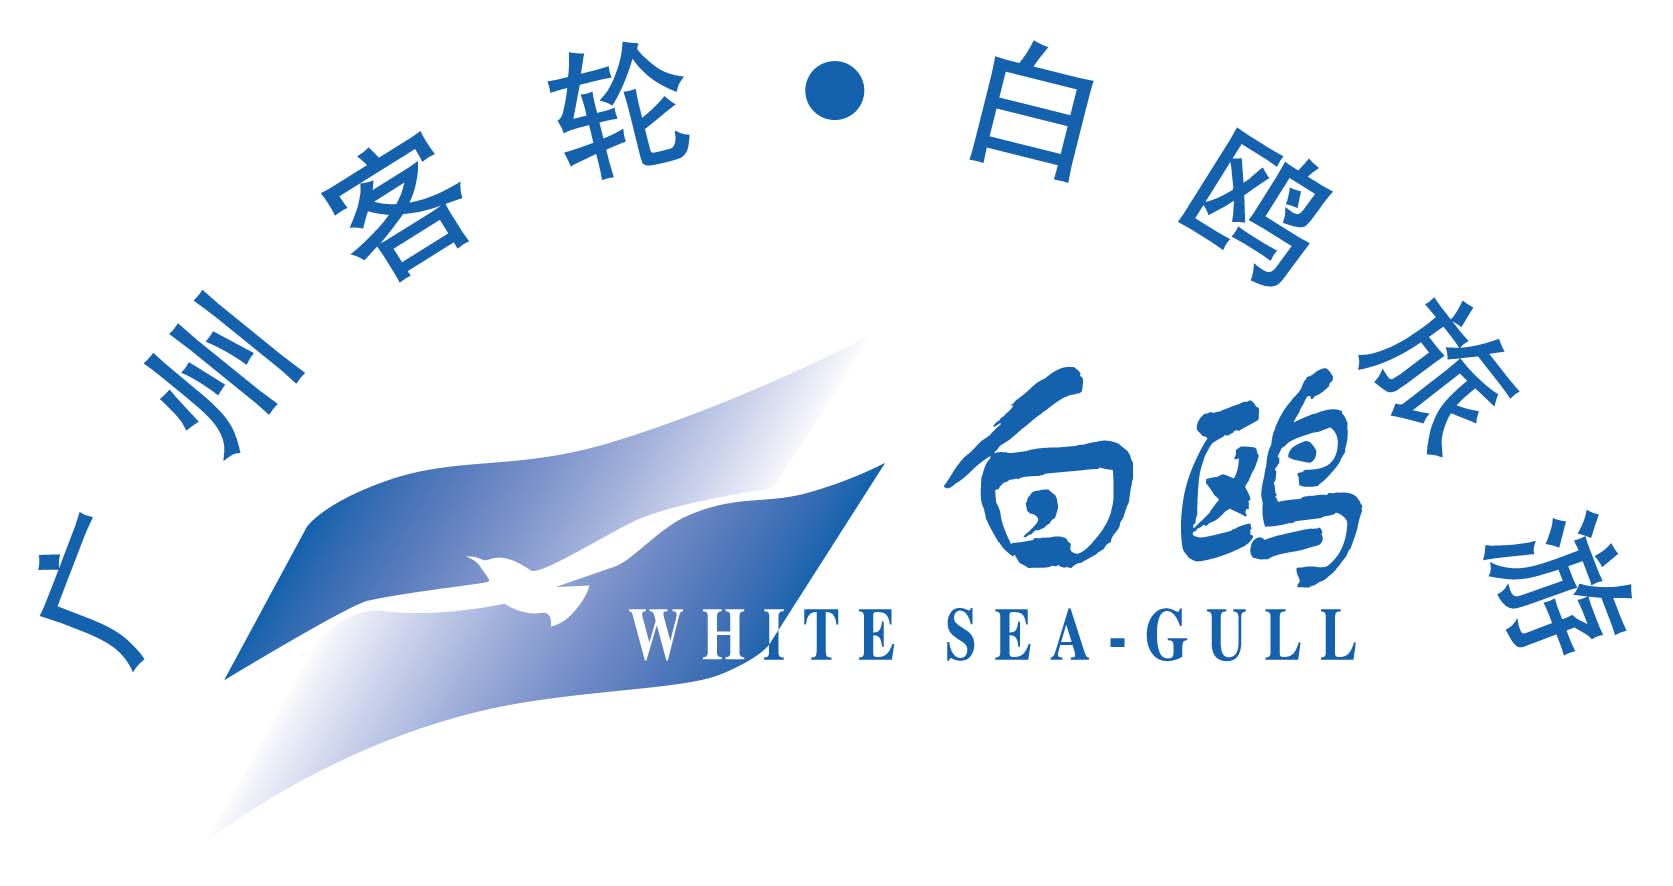 广州市客轮公司白鸥旅游分公司天气